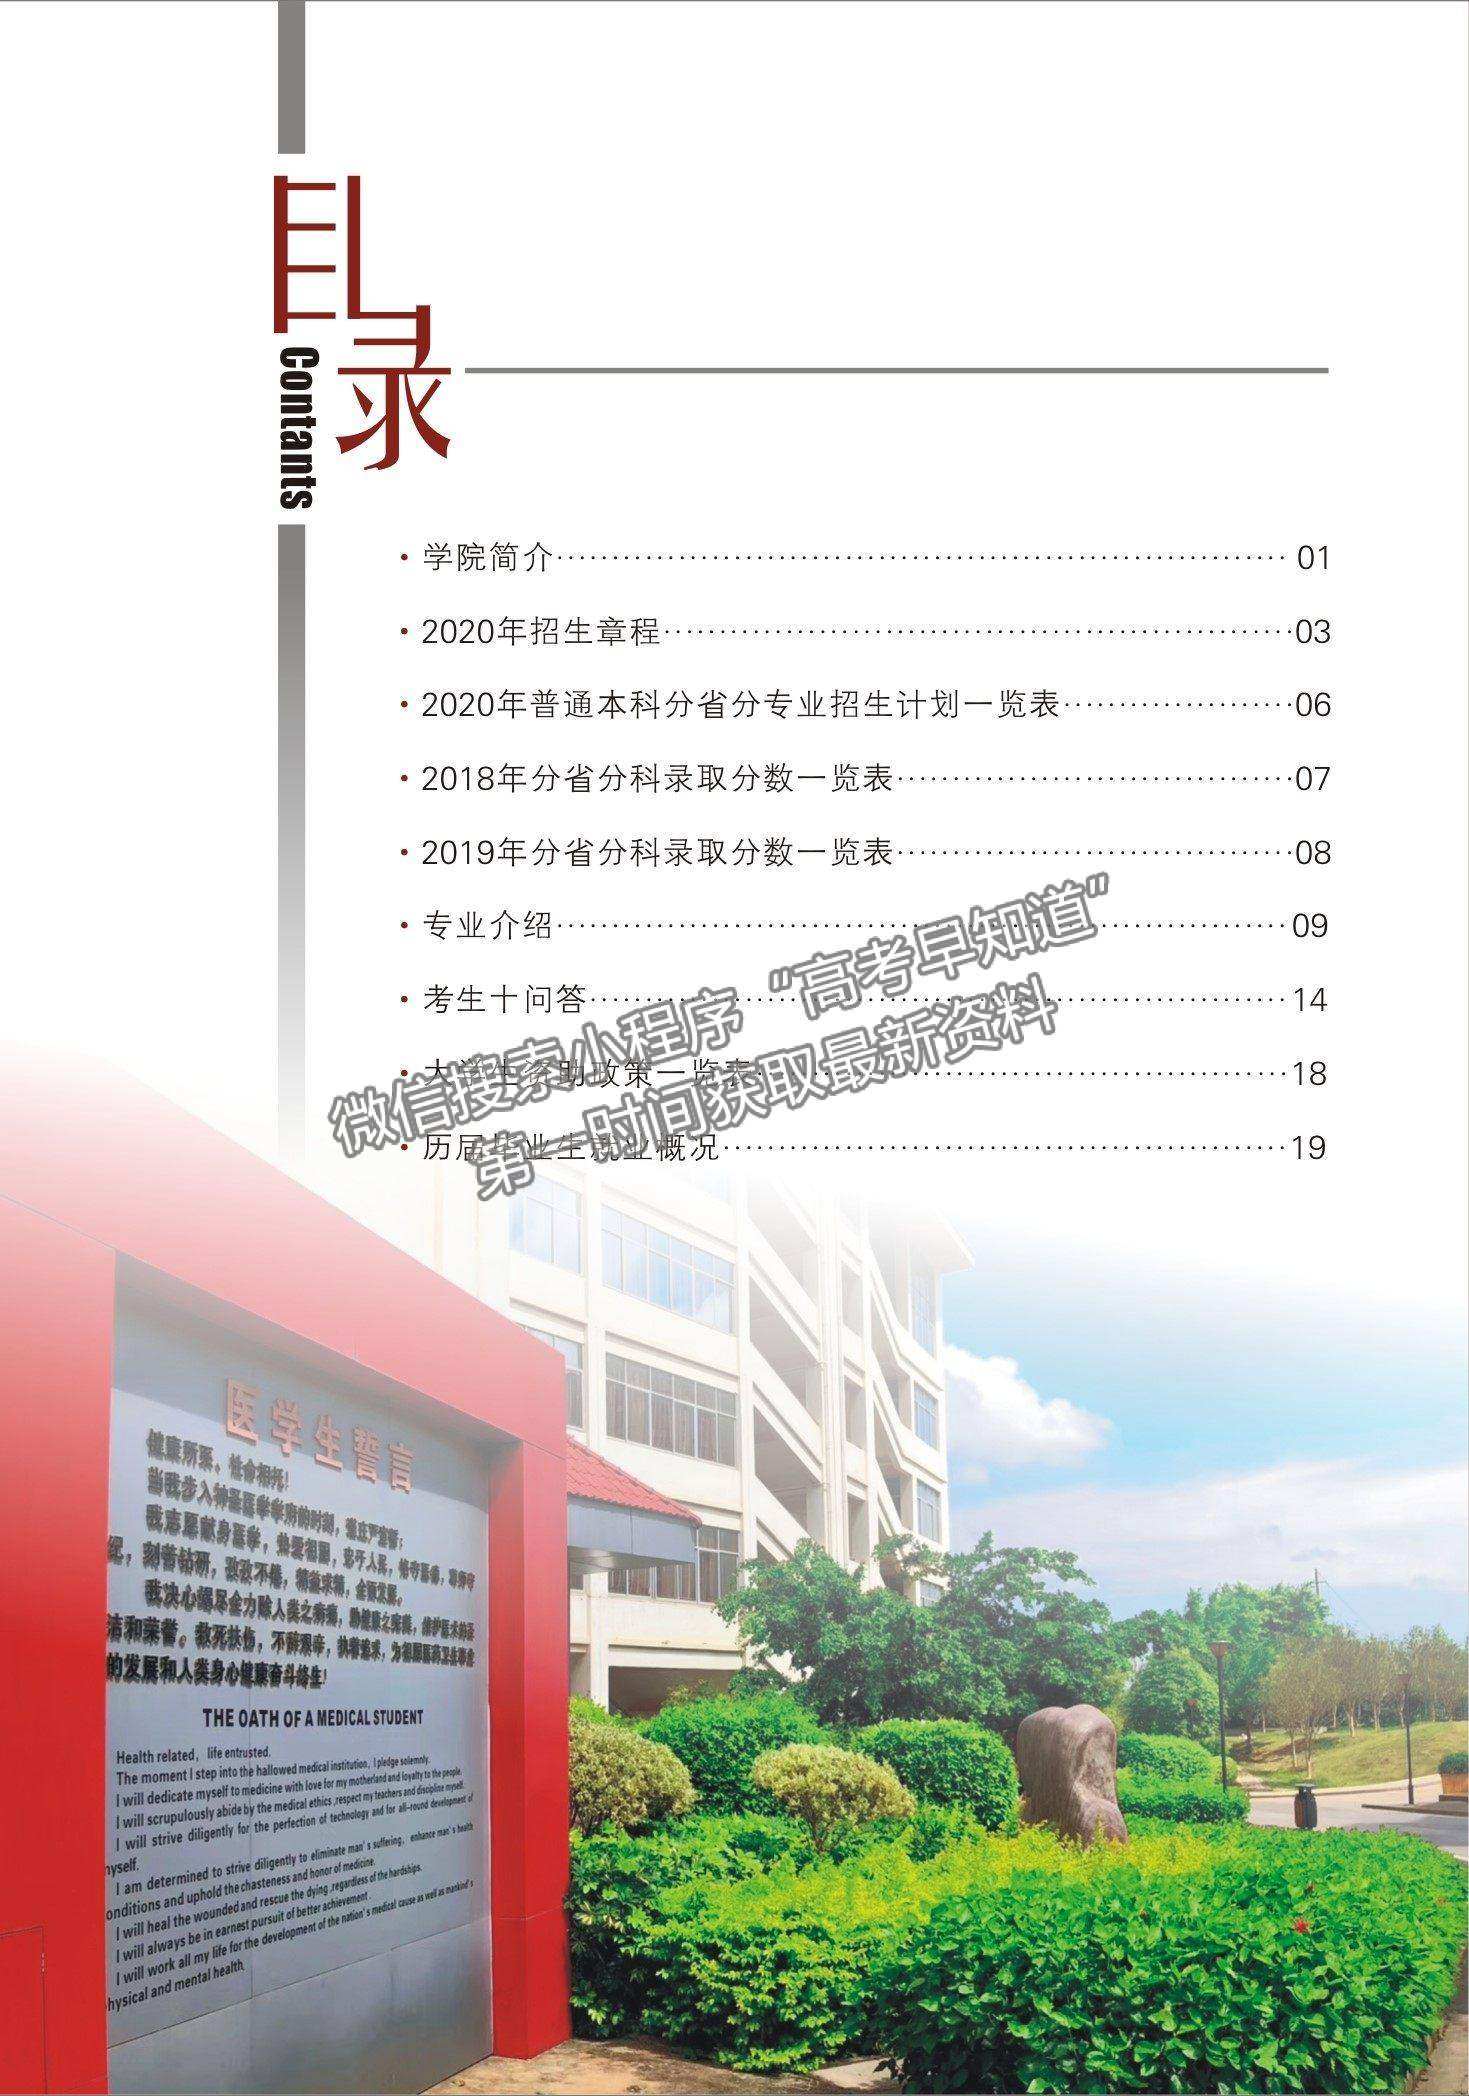 广西中医药大学赛恩斯新医药学院2020年招生简章